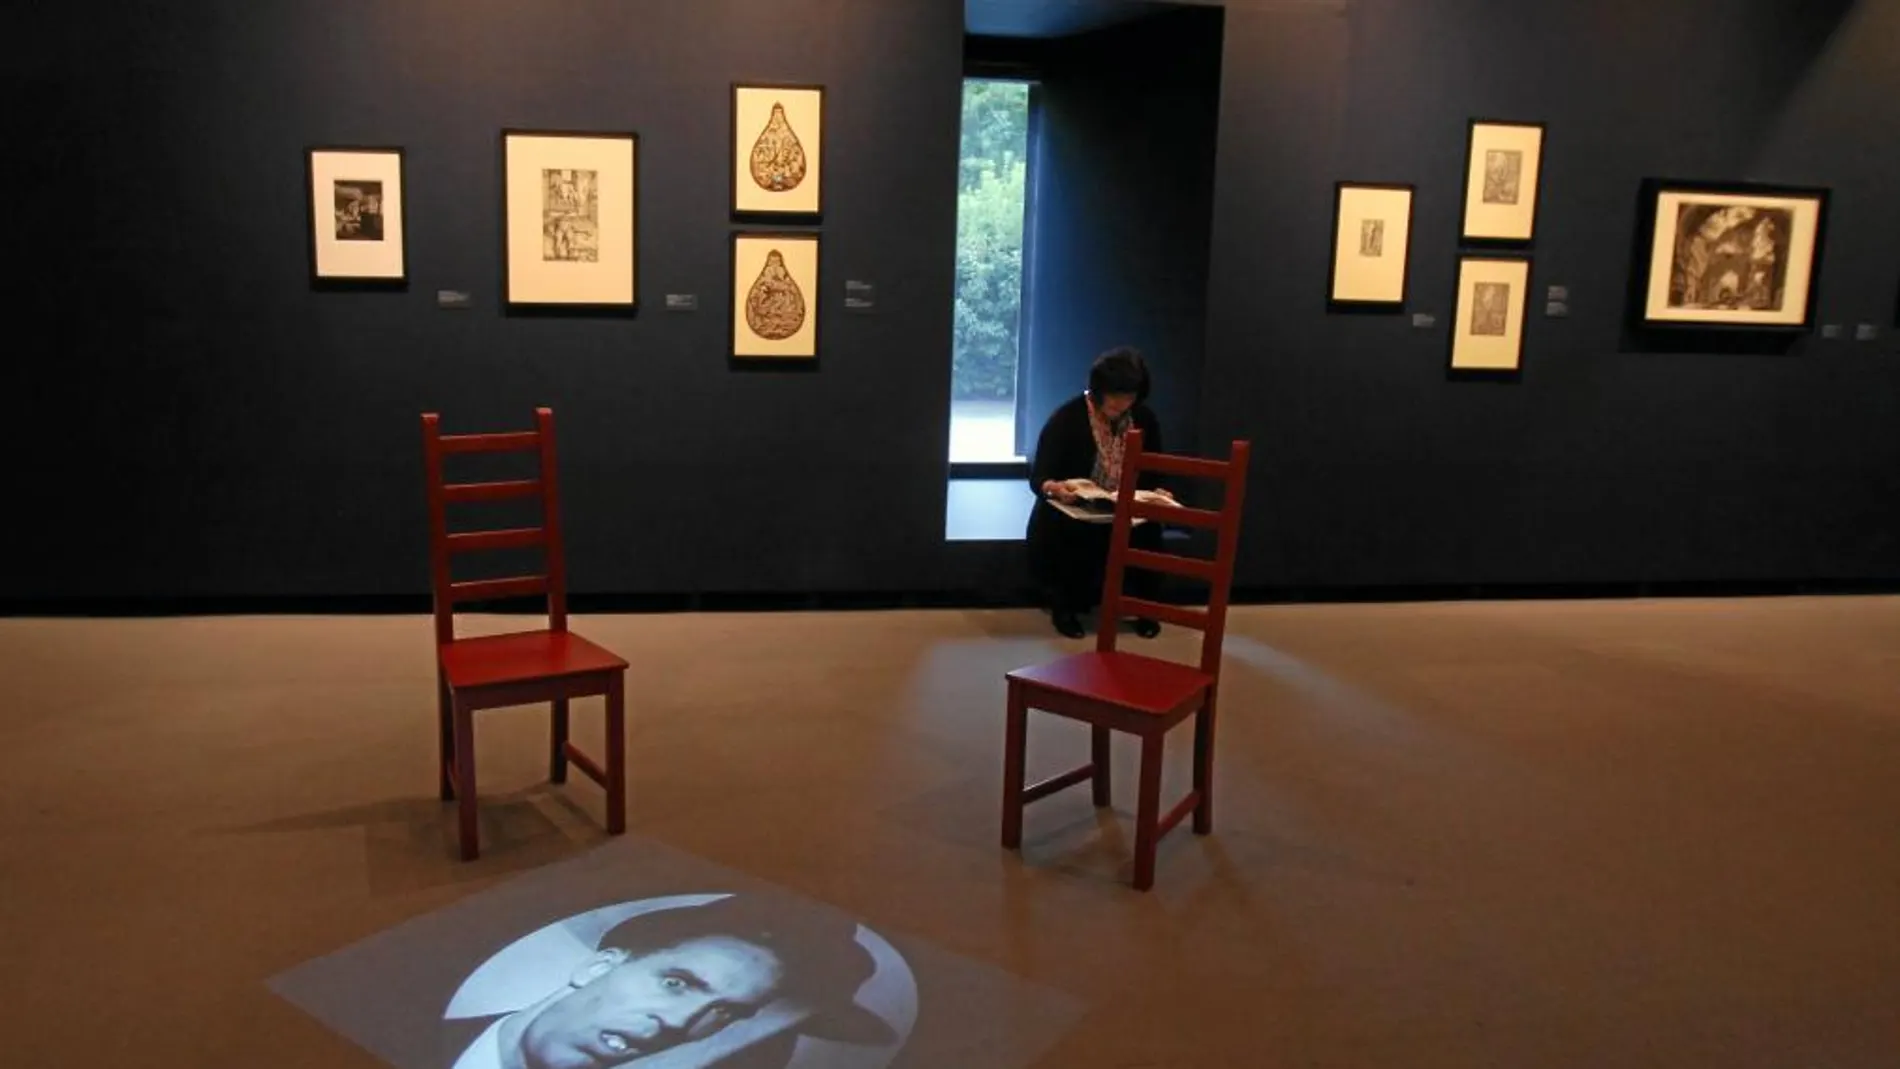 El montaje, el lugar donde se muestra la obra, era esencial para Breton y Duchamp